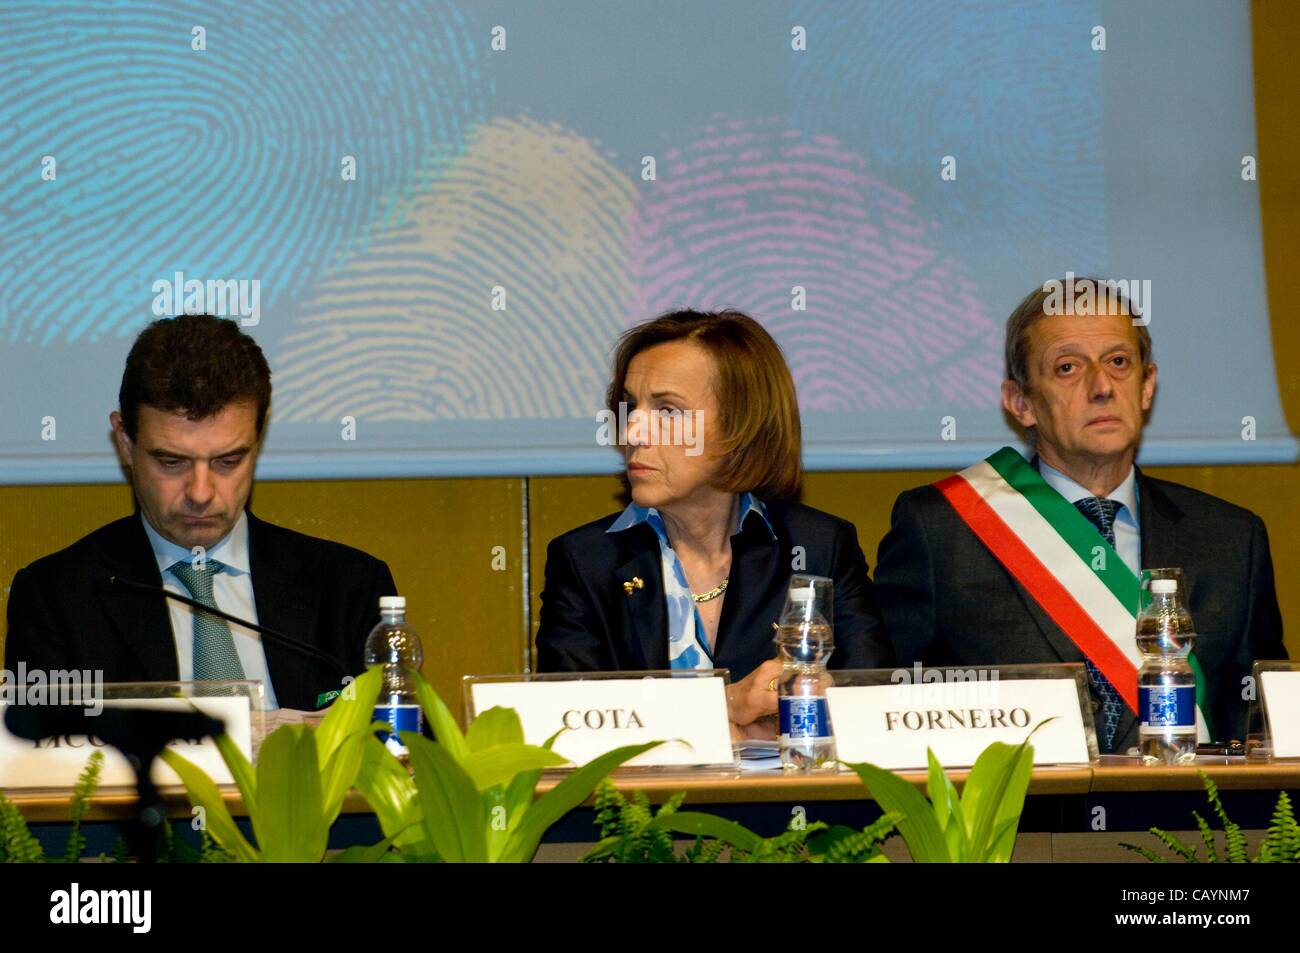 Italie Piémont Turin 10 mai 2012 à 10 heures, la présidente de la région du Piémont Cota (à gauche) Le ministre du Travail et de la maria Elsa Fornero (au centre) le maire de Turin, Piero Fassino (à droite) s'est exprimé à l'ouverture dans la chambre jaune Banque D'Images